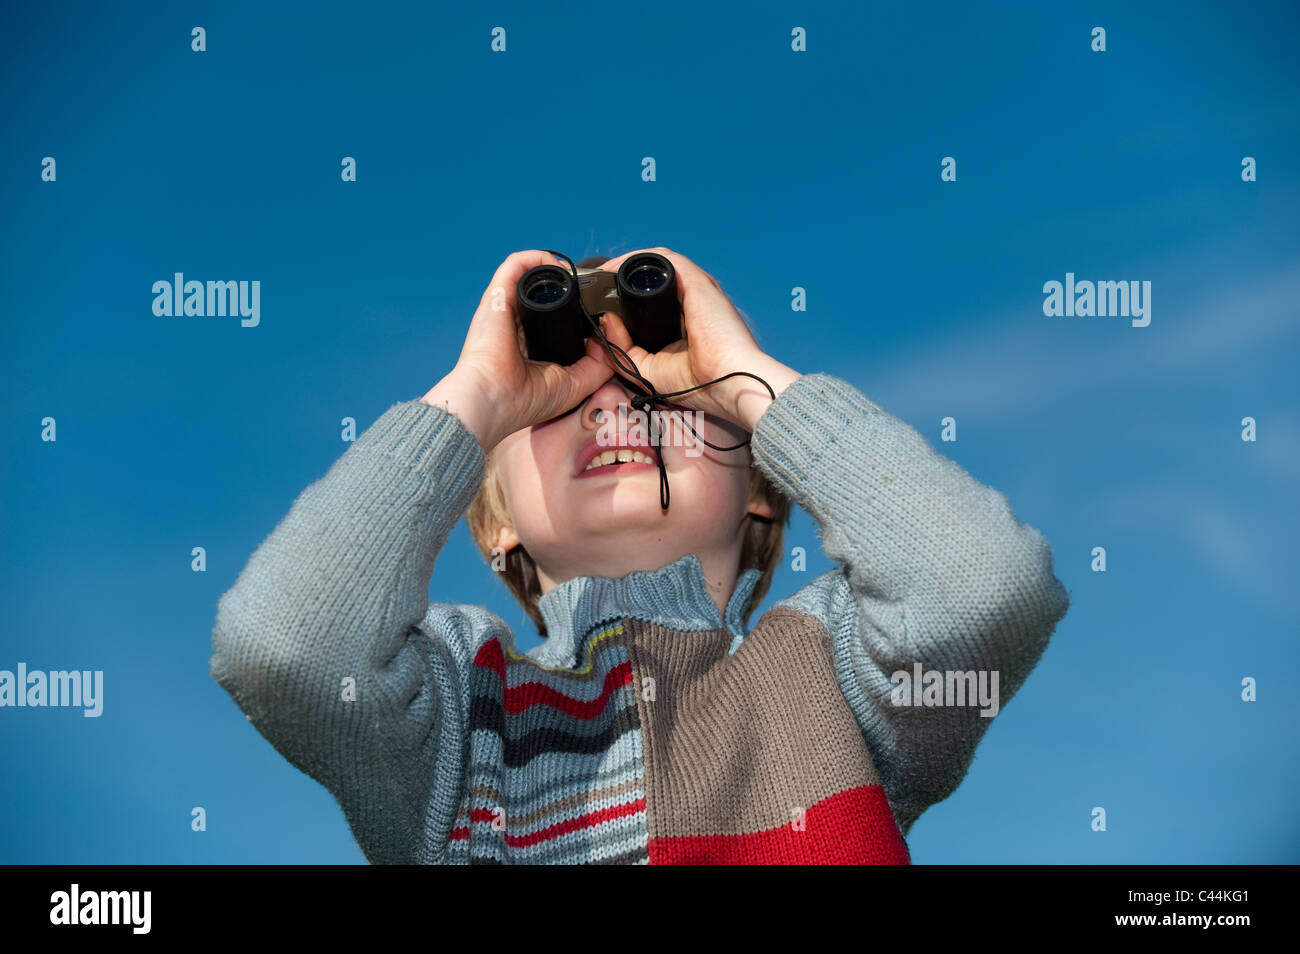 Kleiner Junge Blick durch ein Fernglas Stockfotografie - Alamy